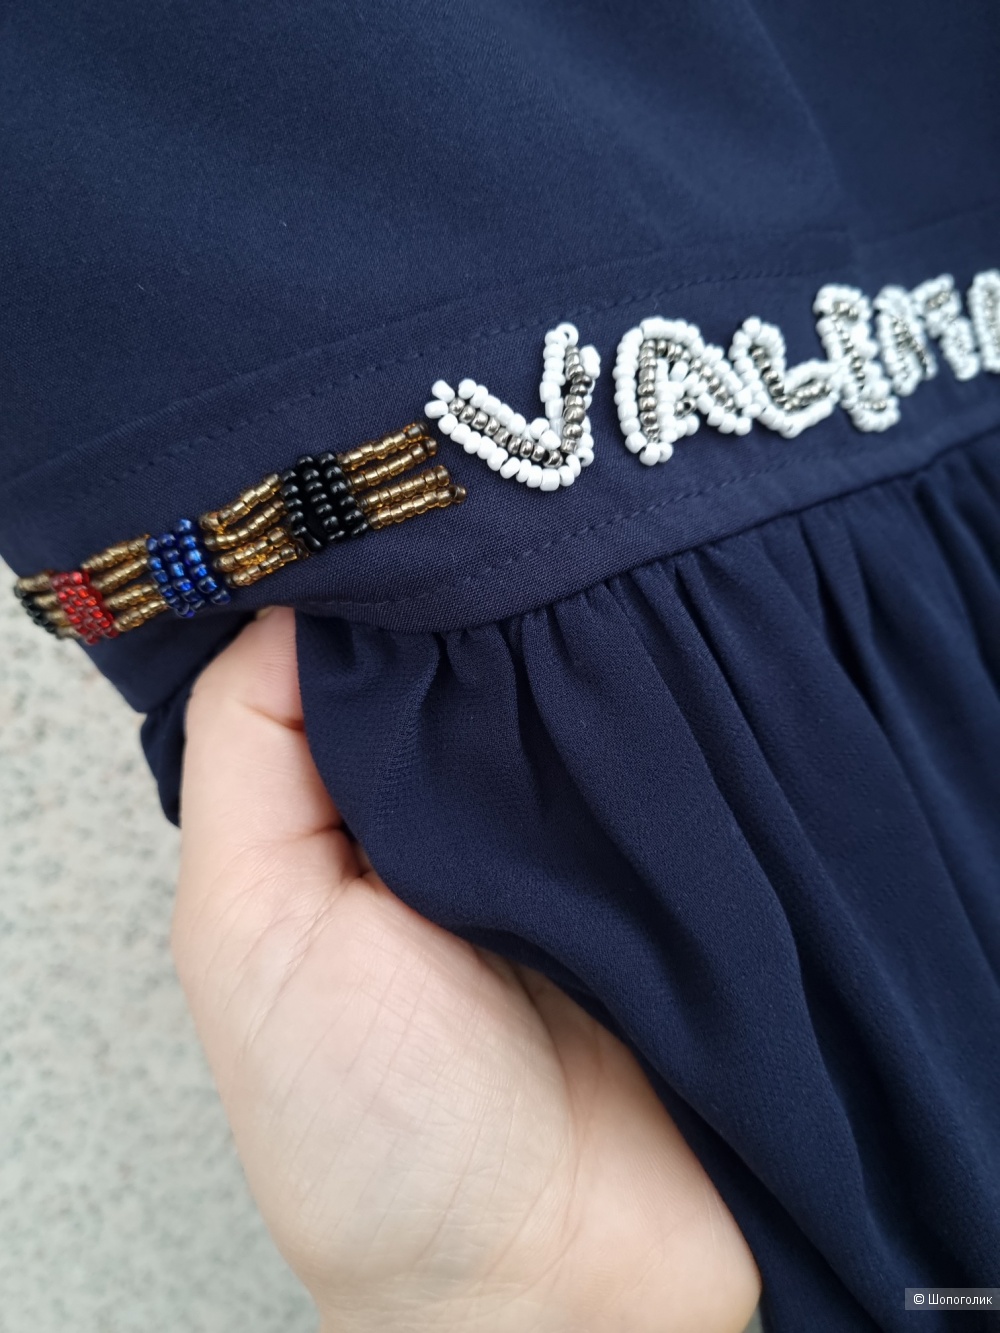 Платье Valentino, 42-44